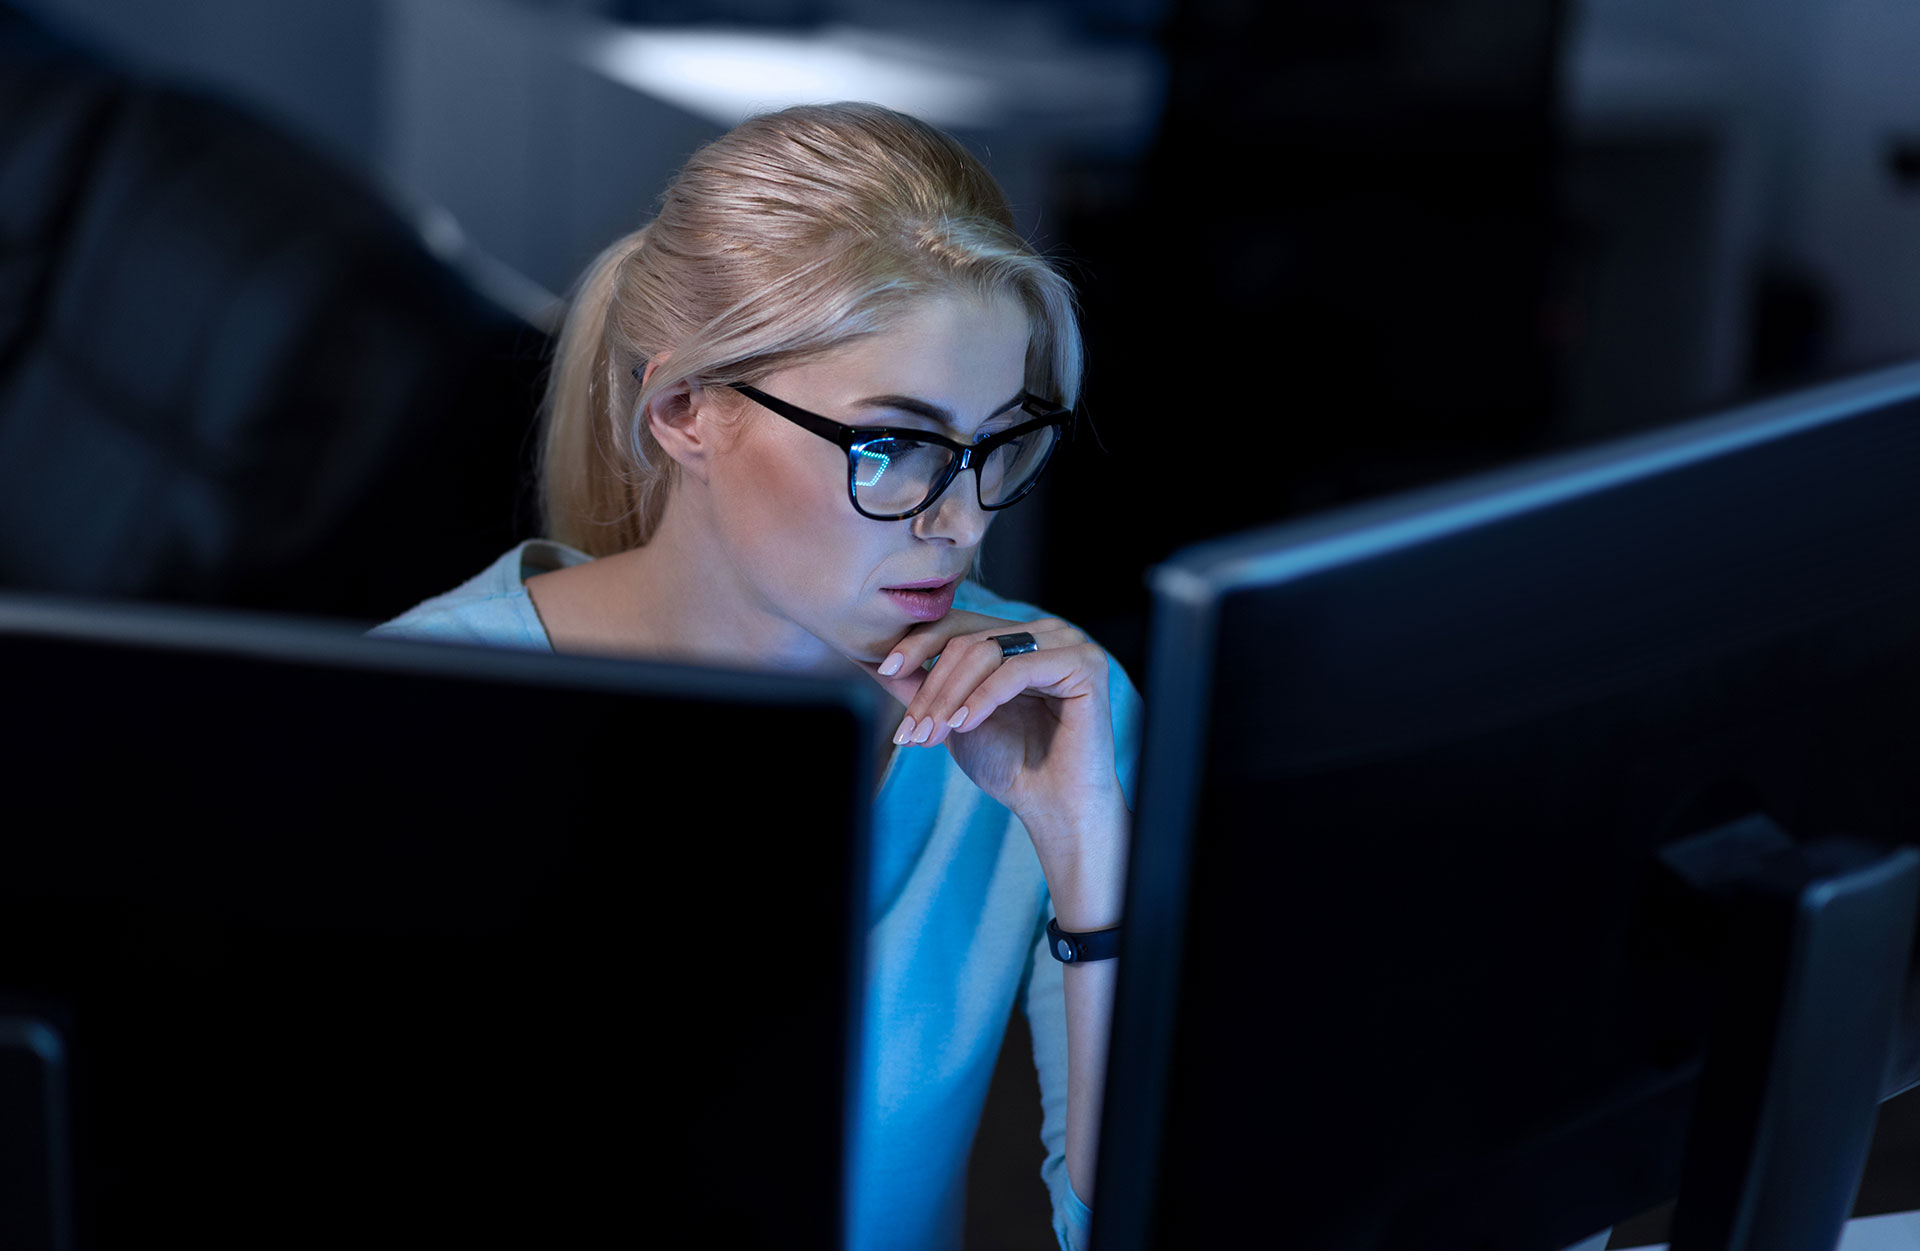 Female hacker in front of computers in dark room